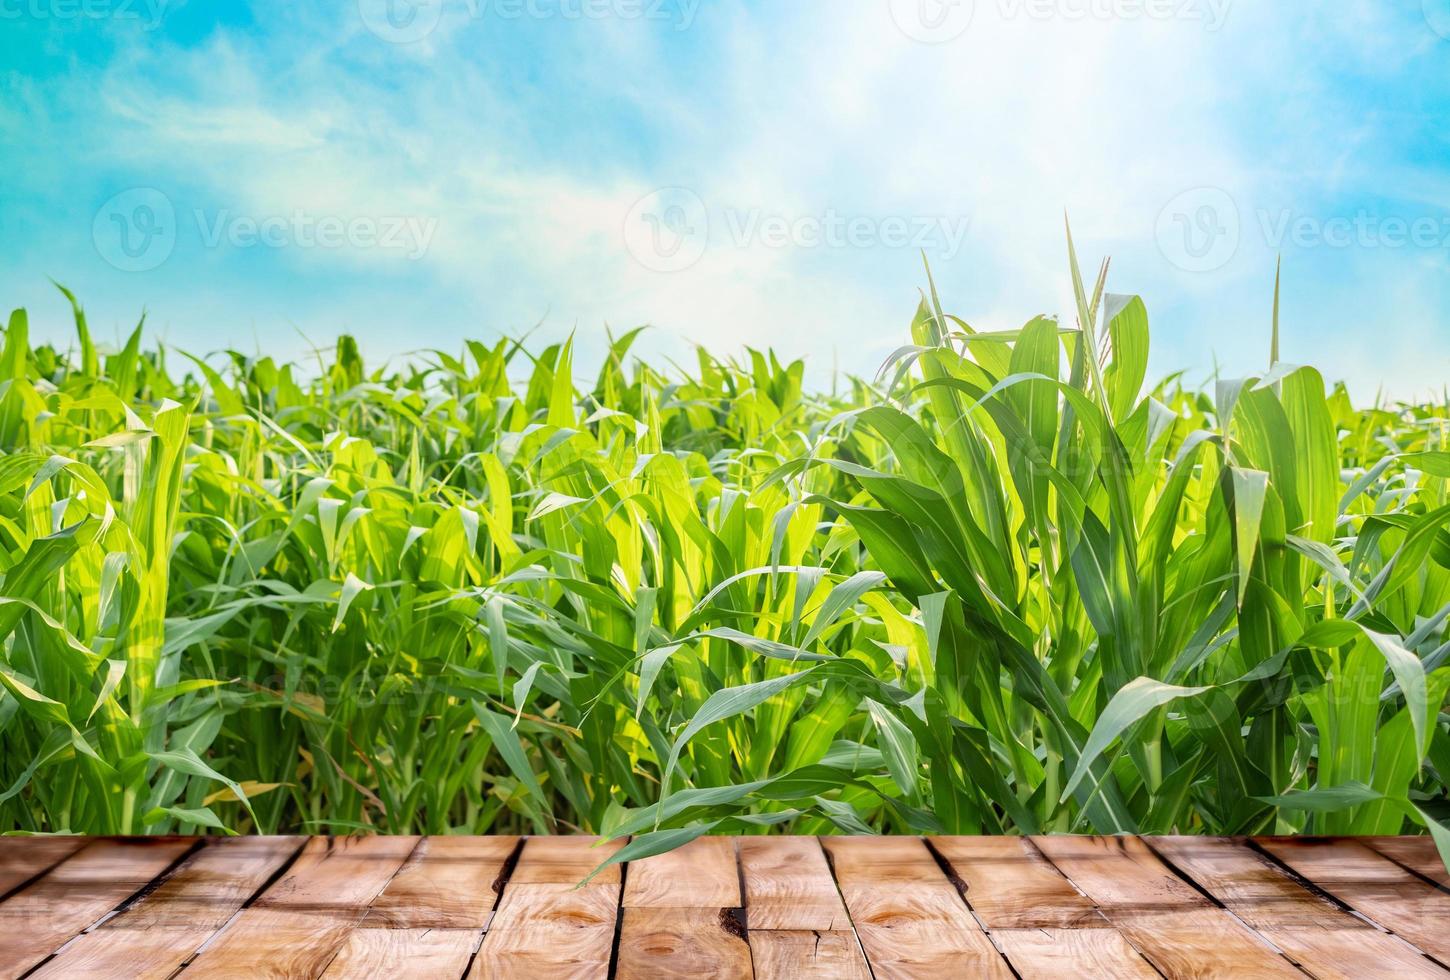 hermosa de madera mesa piso con verde maíz campo naturaleza y azul cielo con luz de sol fondo, agricultura producto en pie escaparate antecedentes foto